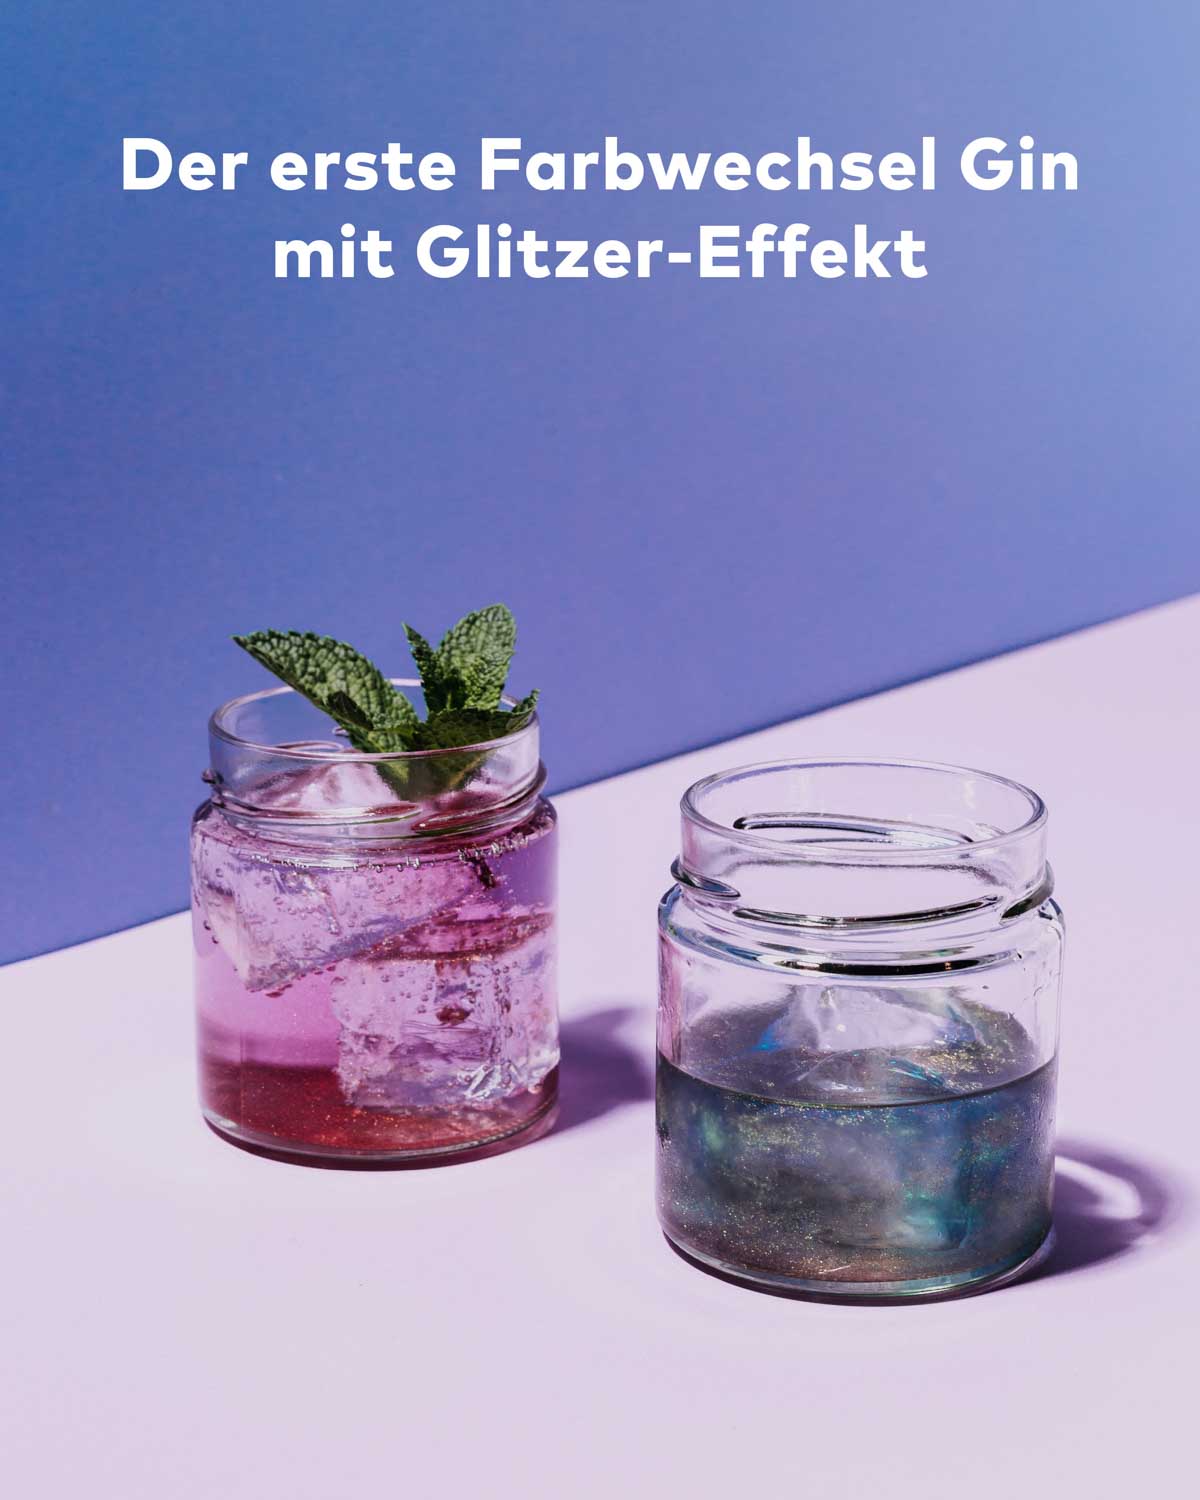 Die Simsala GinMagic Edition von Flaschenpost Gin präsentiert sich als erster Glitzer-Farbwechsel-Gin. Zwei Gläser sind dargestellt, eins in leuchtendem Blau und das andere in zartem Pink, beide gefüllt mit diesem zauberhaften Gin.